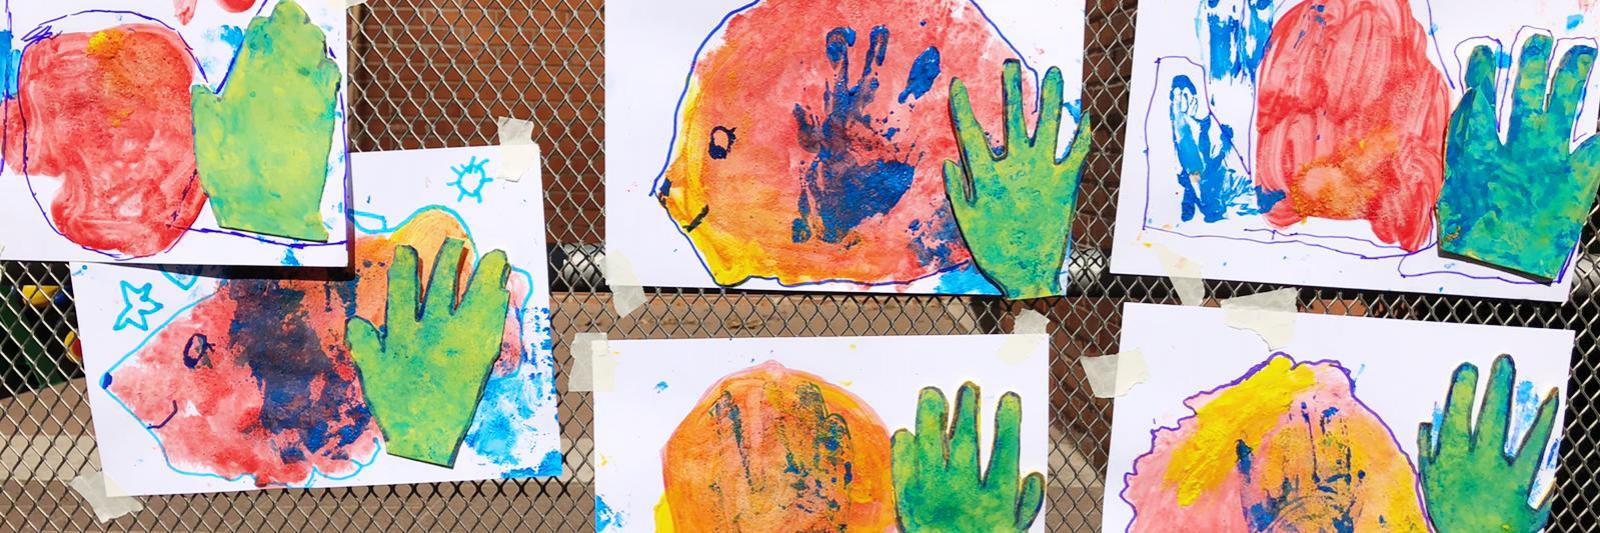 Disegni colorati di bambini appesi ad una parete.